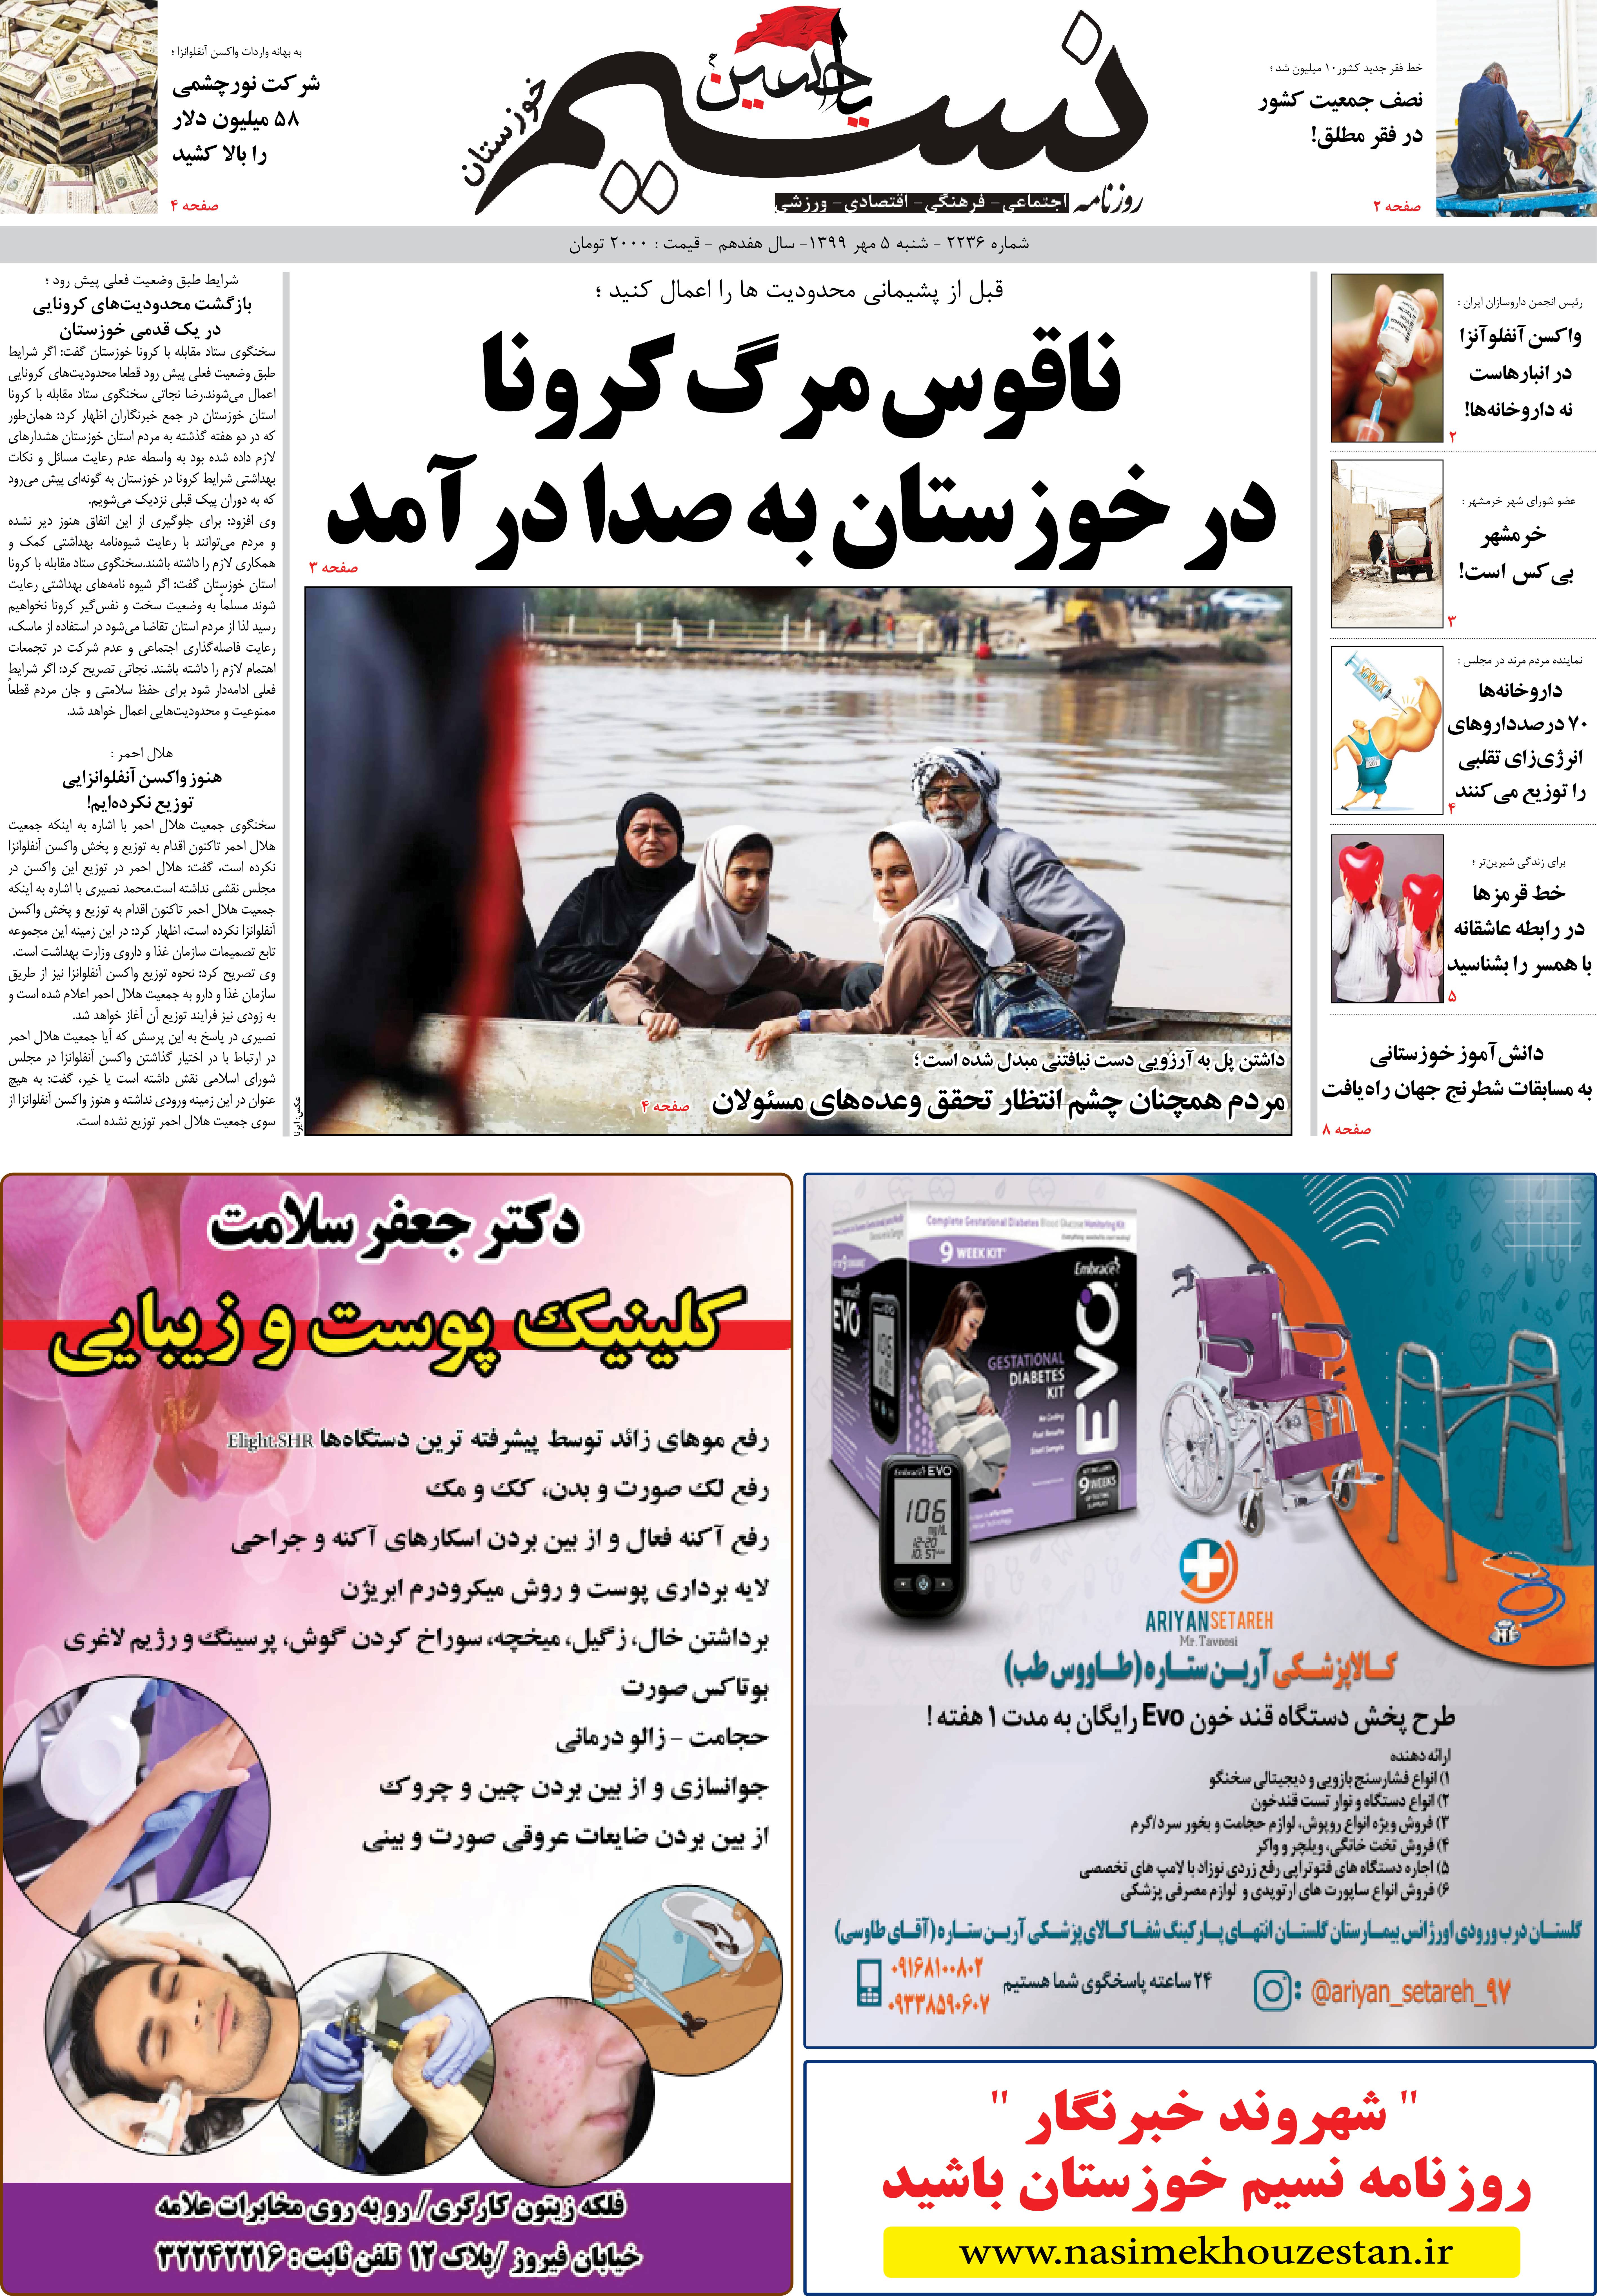 صفحه اصلی روزنامه نسیم شماره 2236 